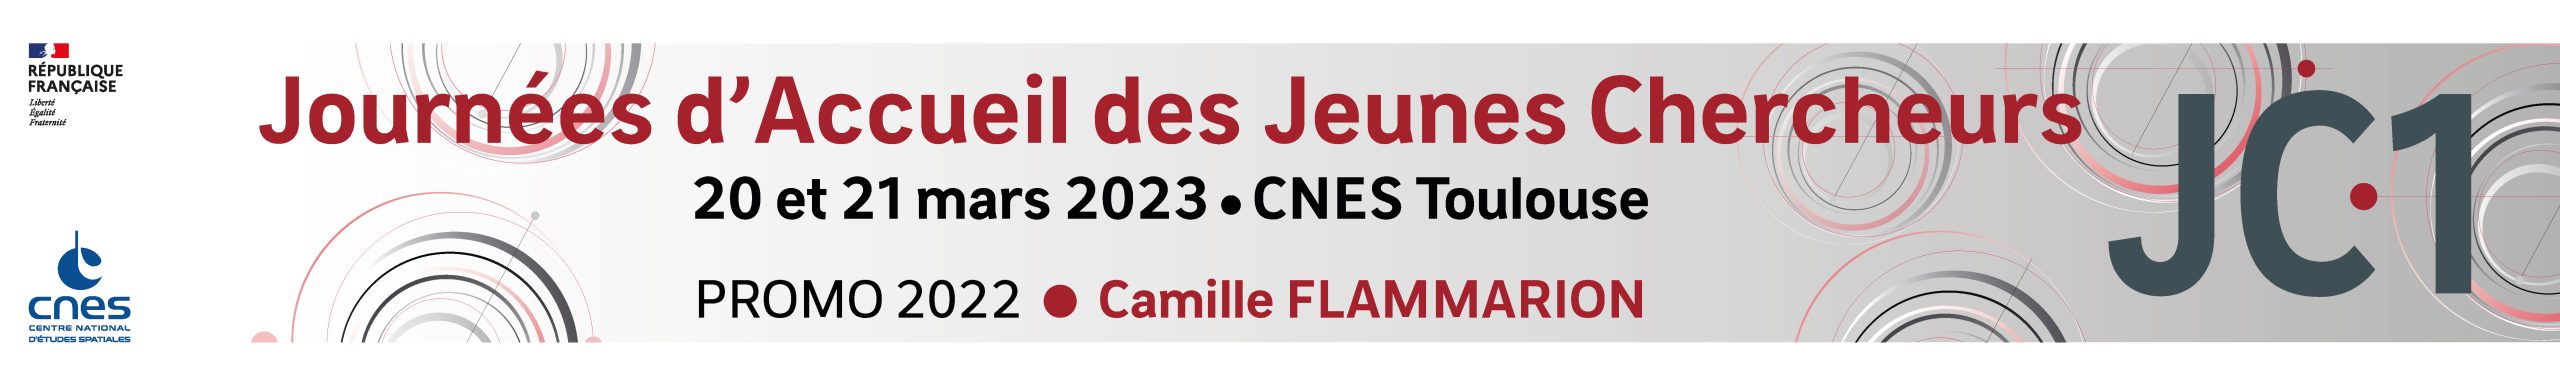 JC1-2023-banniere_V2